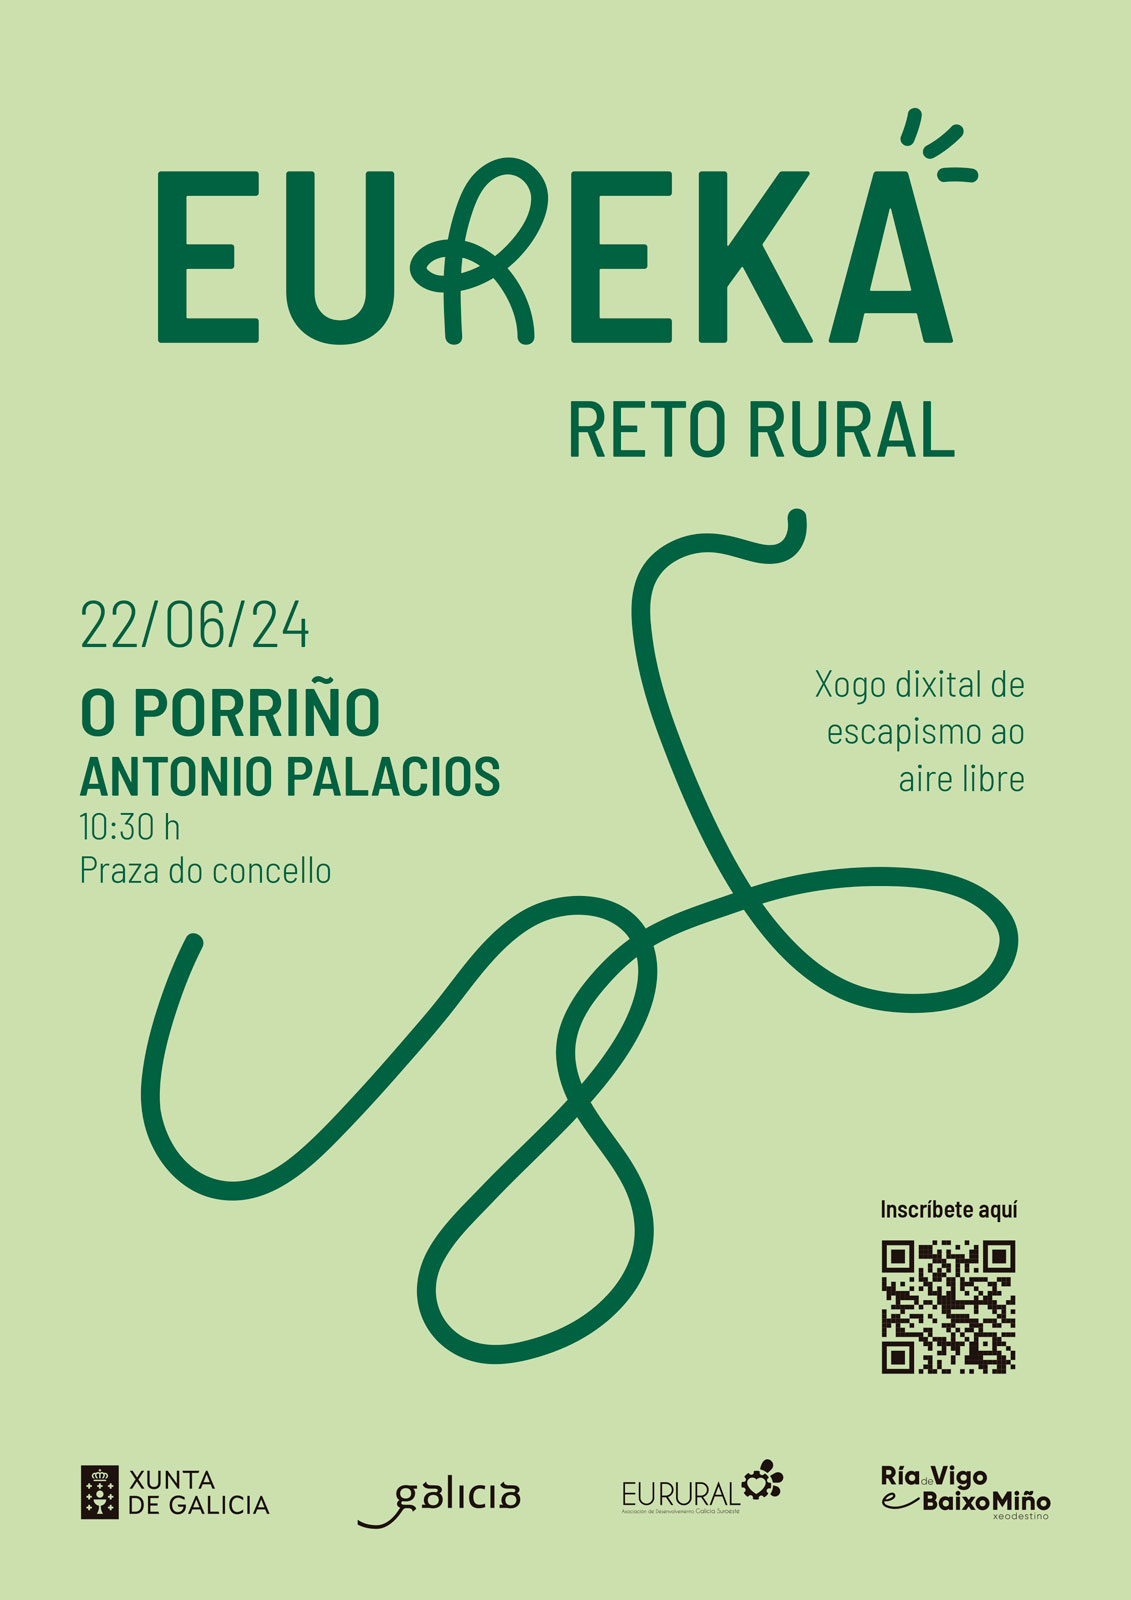 Antonio Palacios, gran protagonista do desafío de Eureka Reto Rural no Porriño